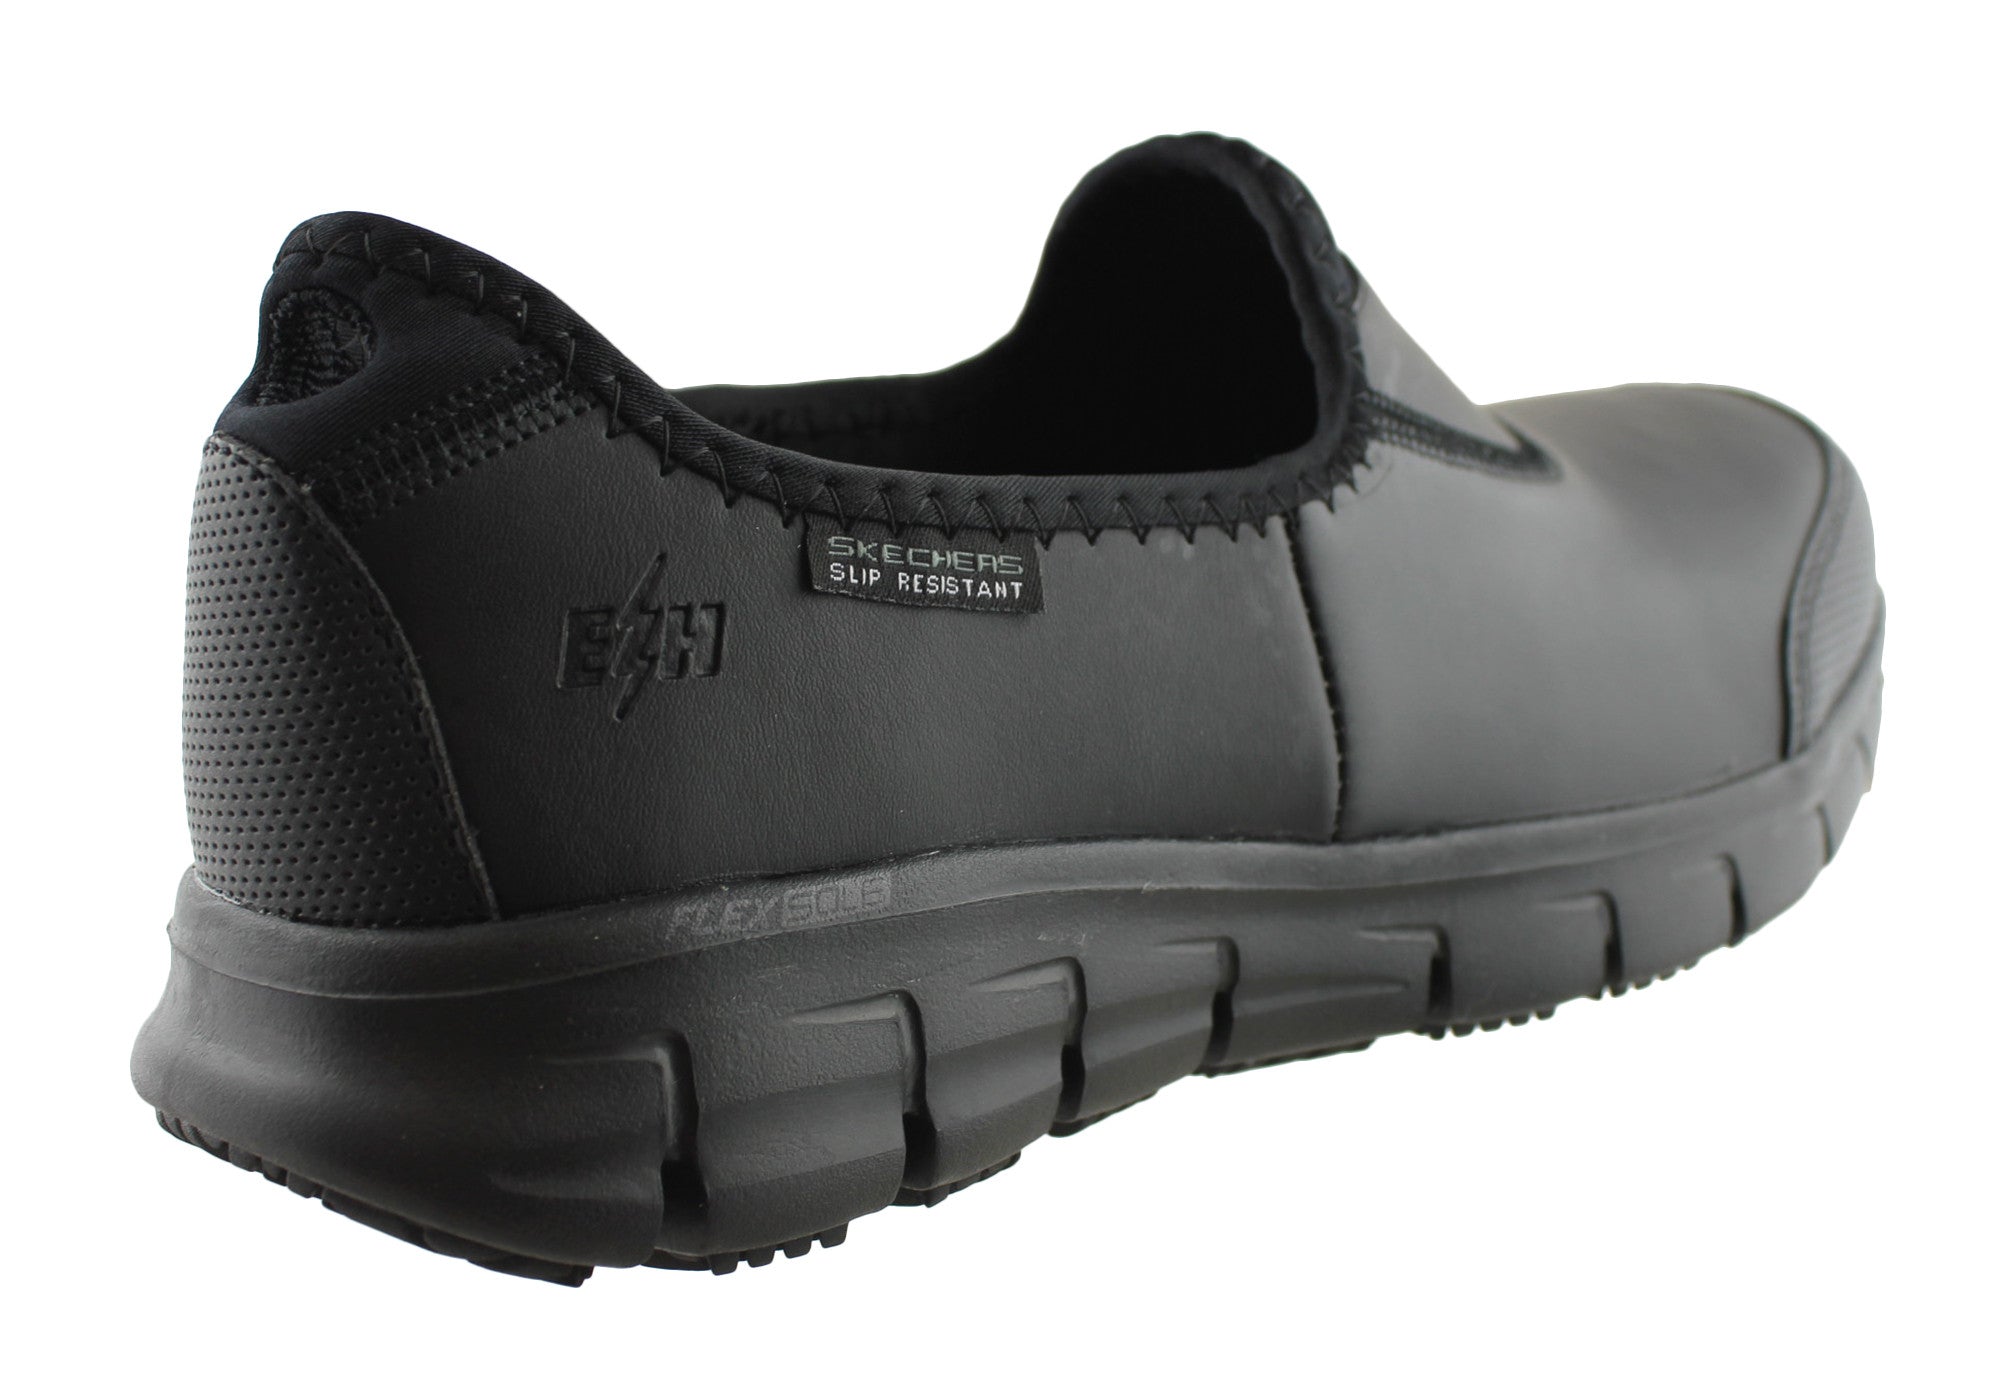 black slip on comfort shoes